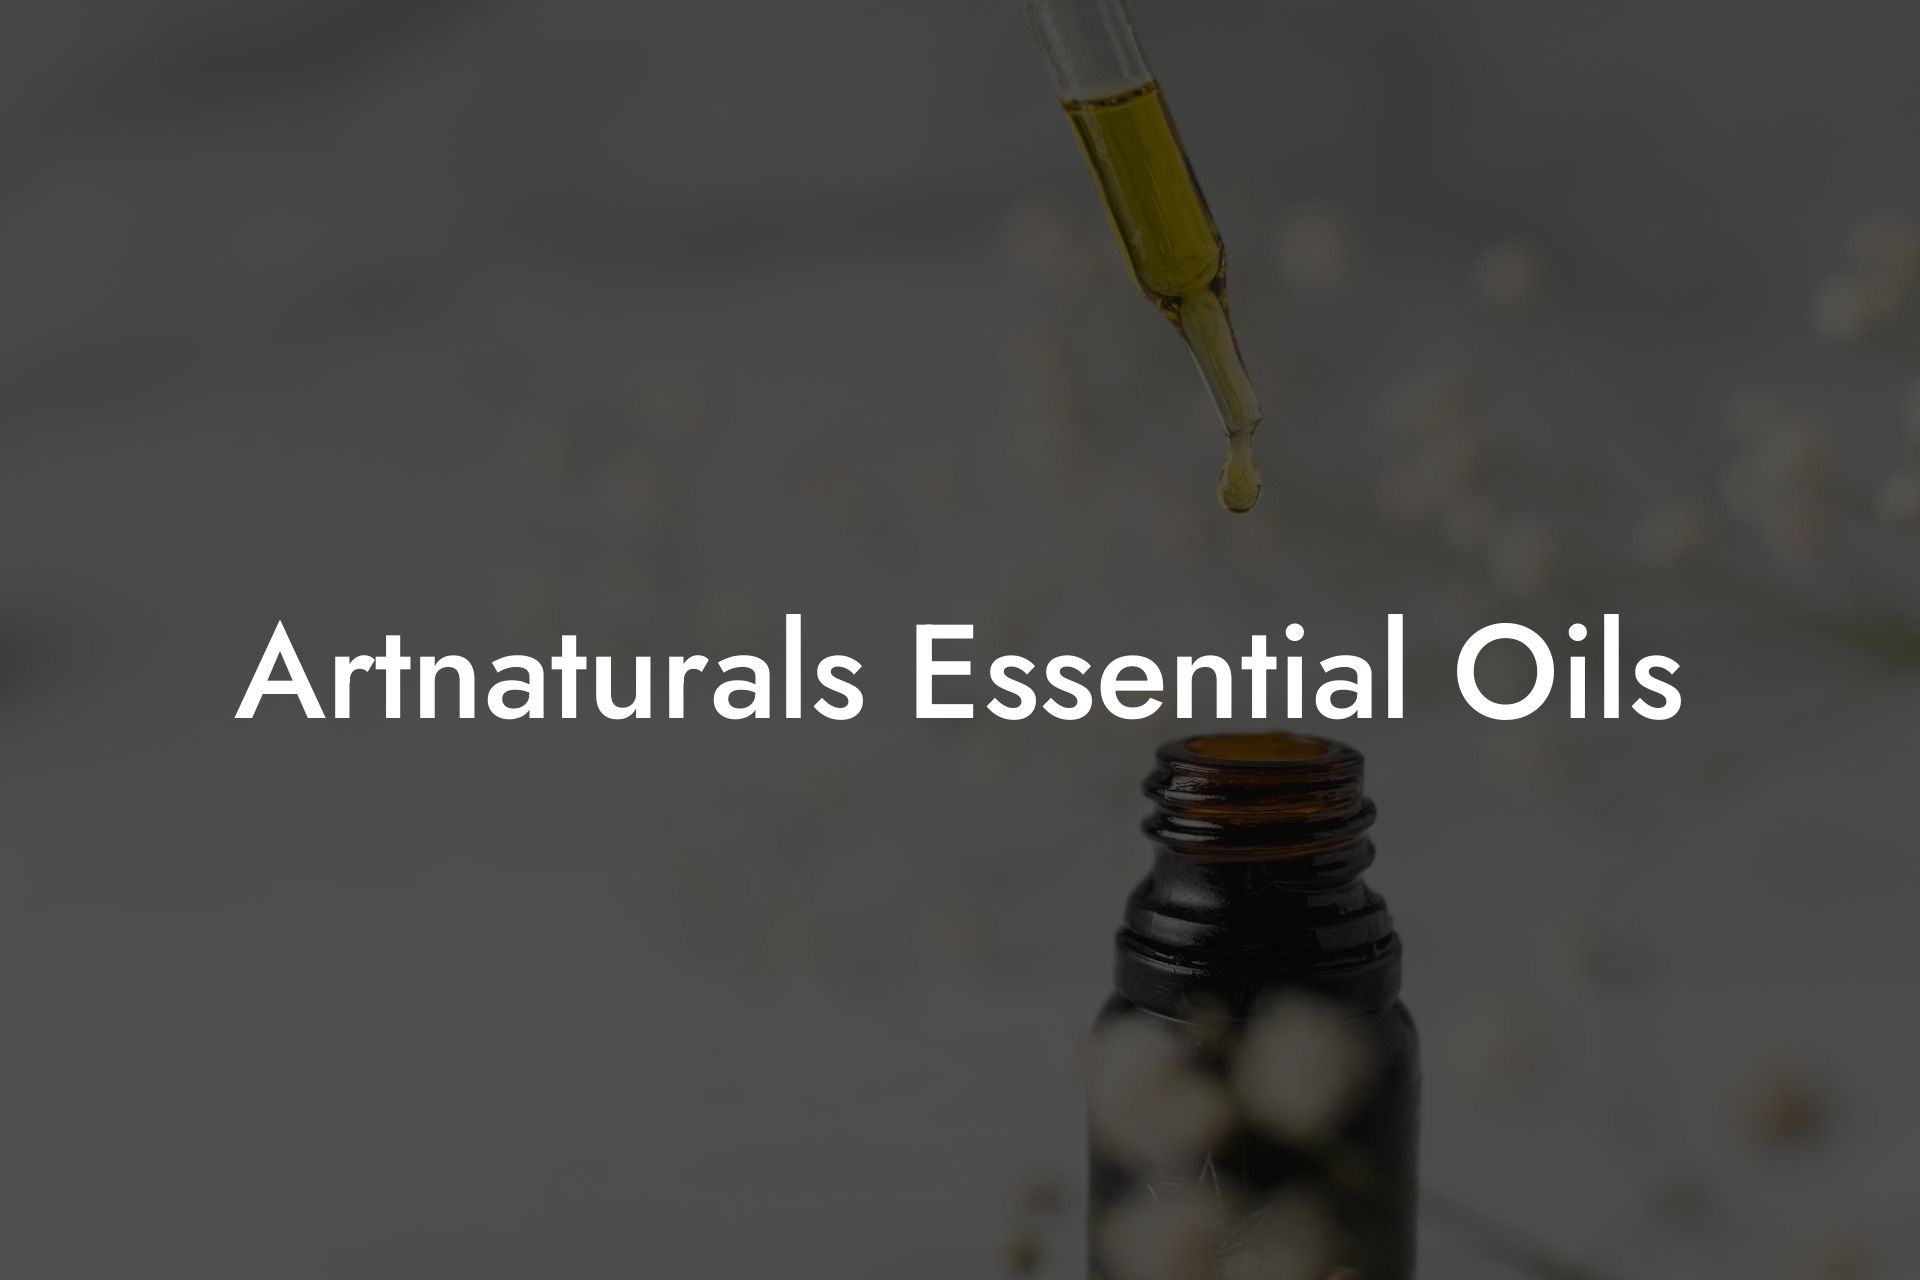 Artnaturals Essential Oils